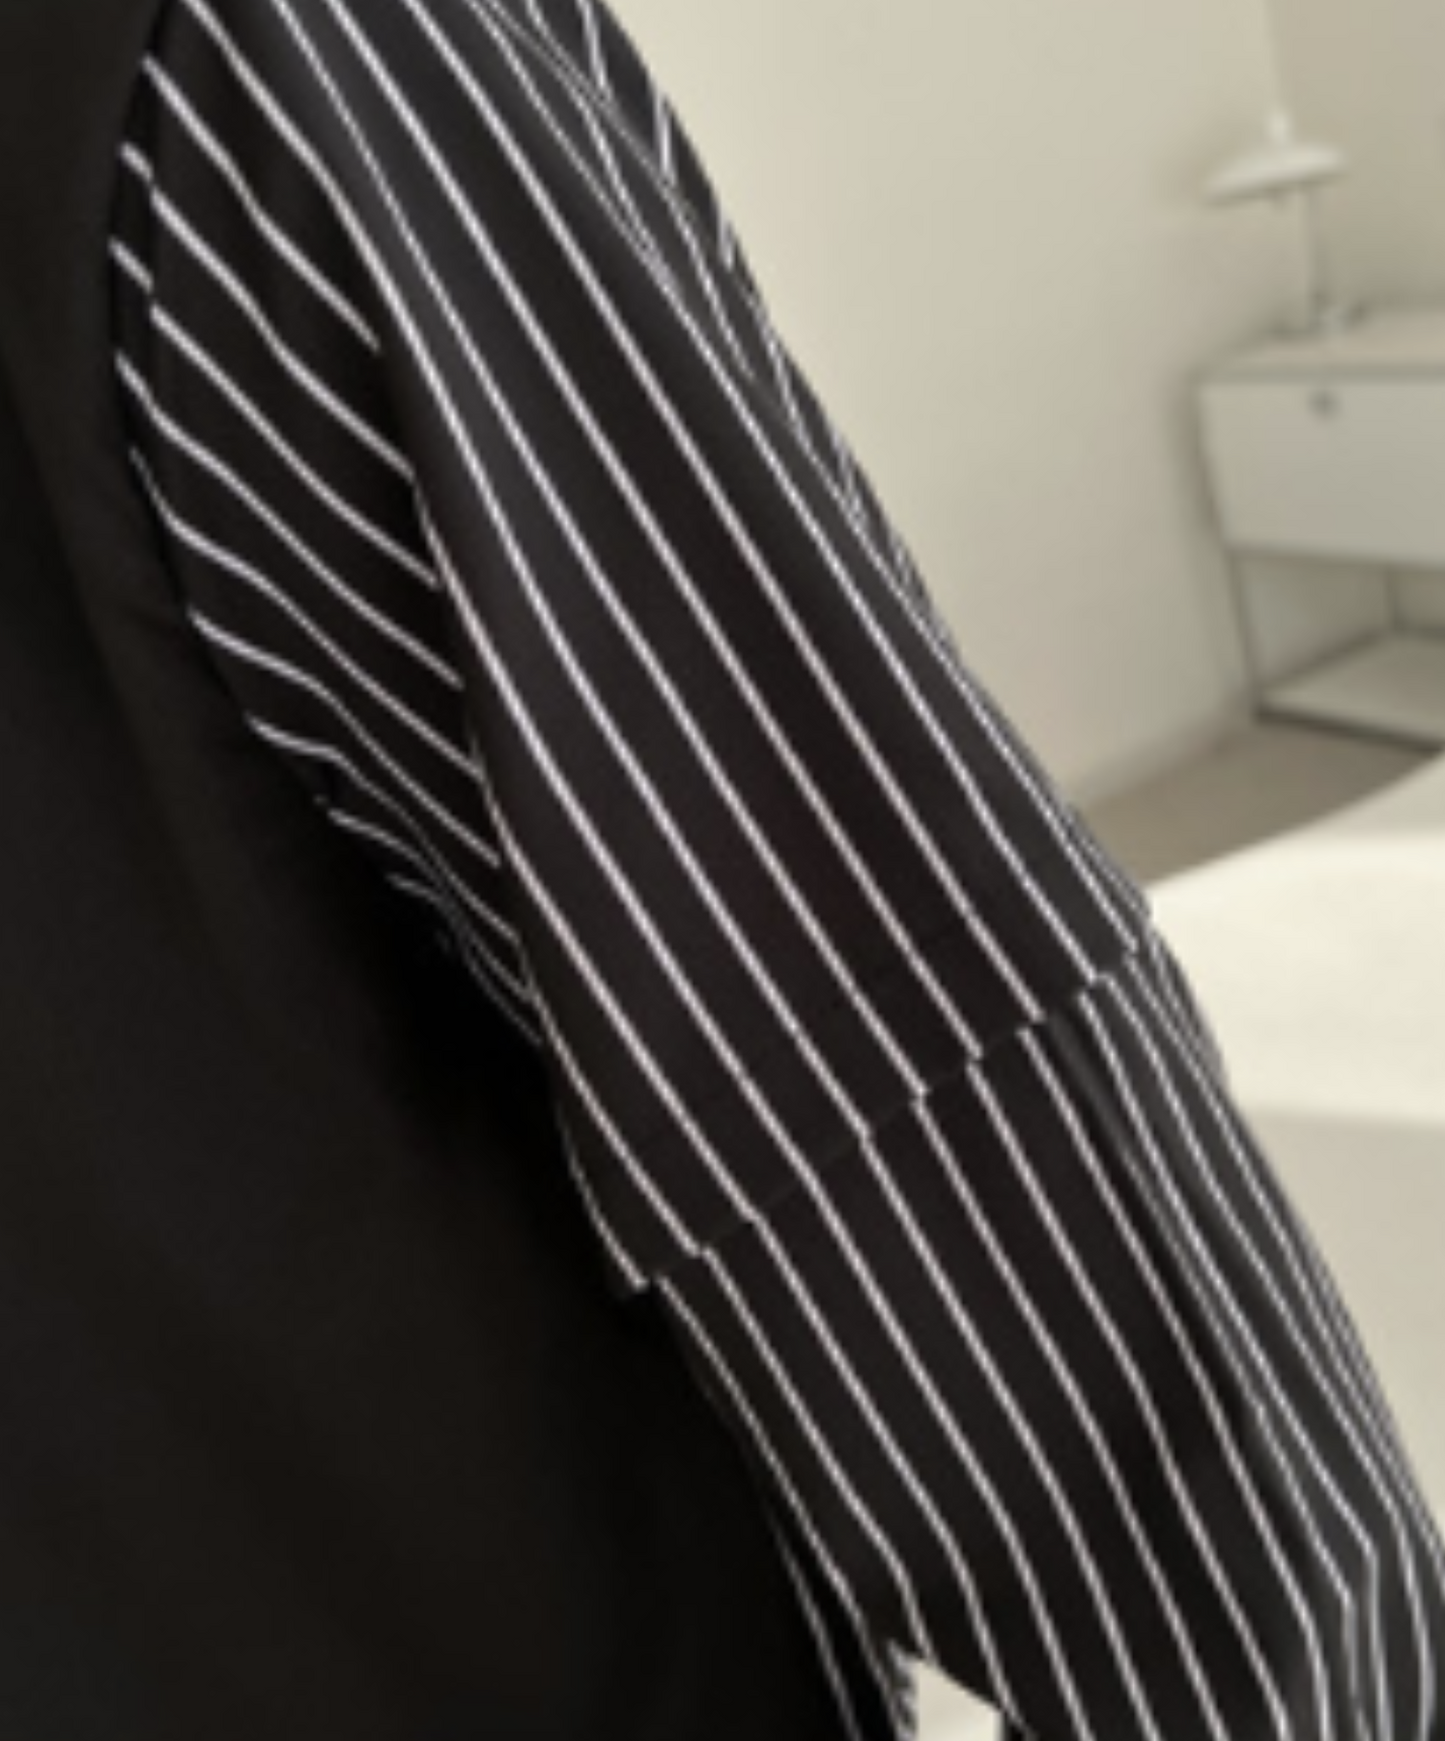 fake double layer stripe shirt EN1115